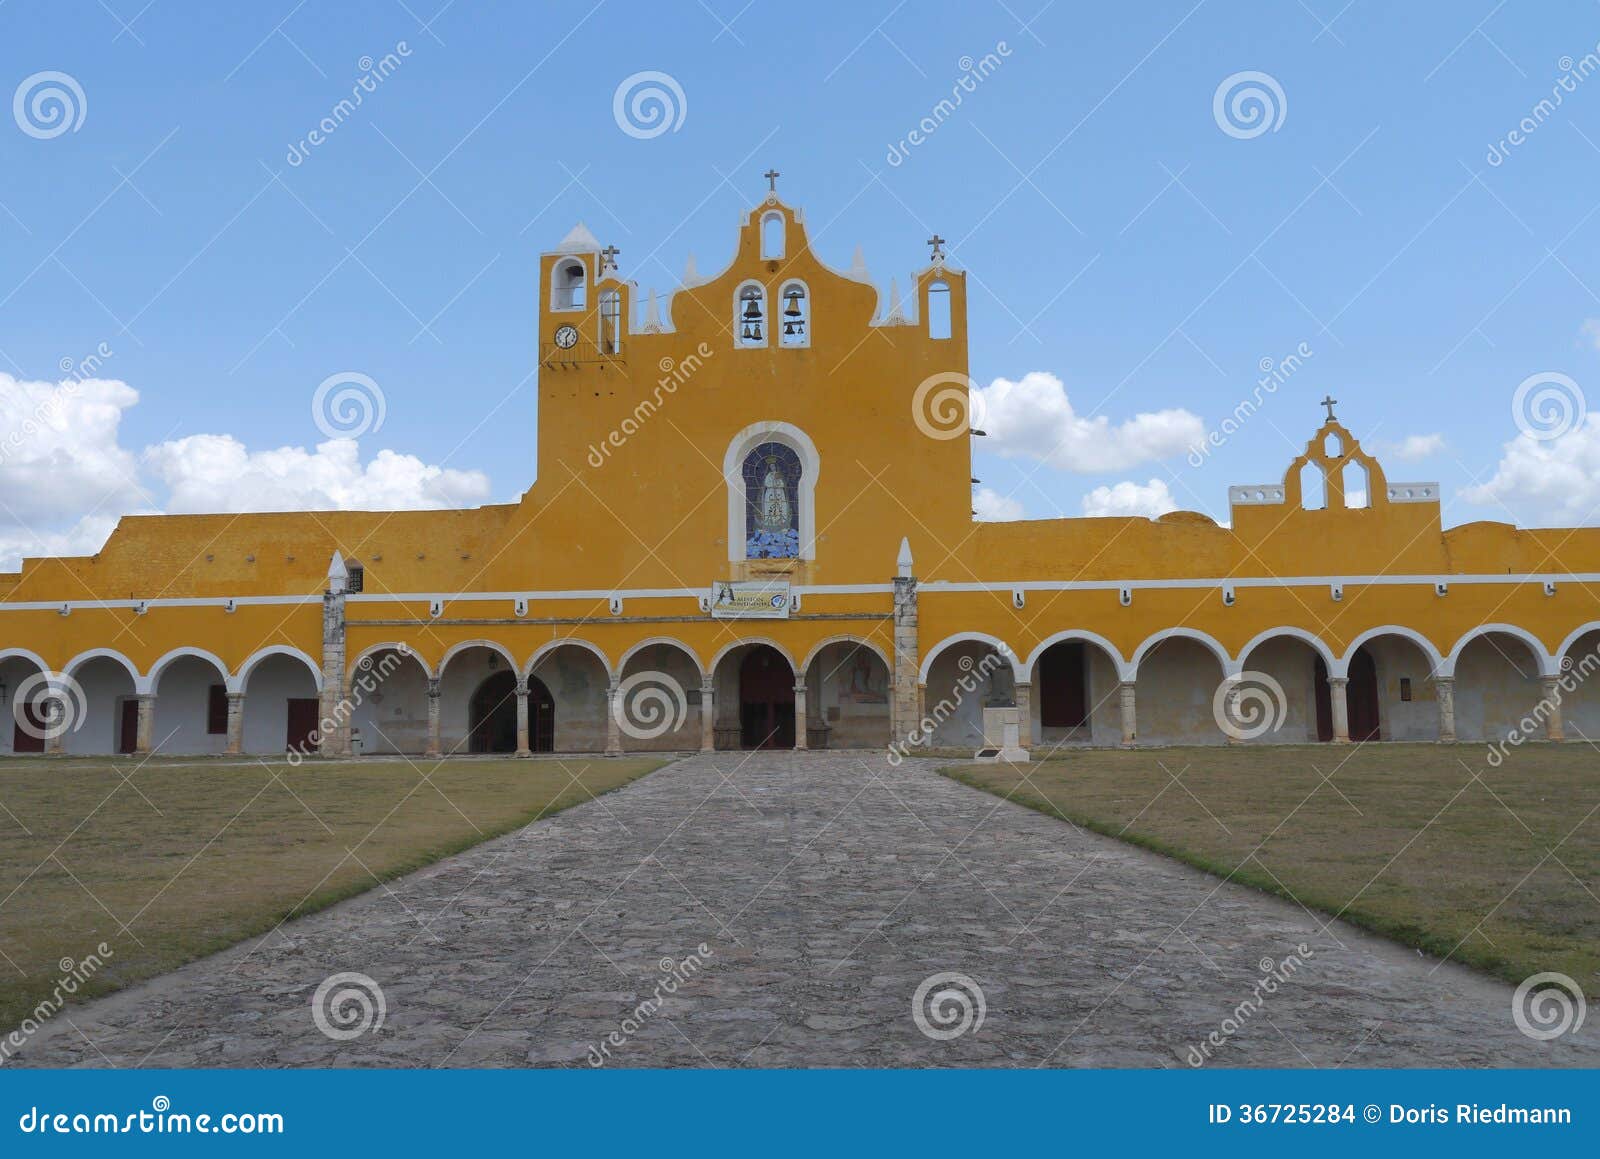 izamal mexico yucatan church yellow city monastery convent